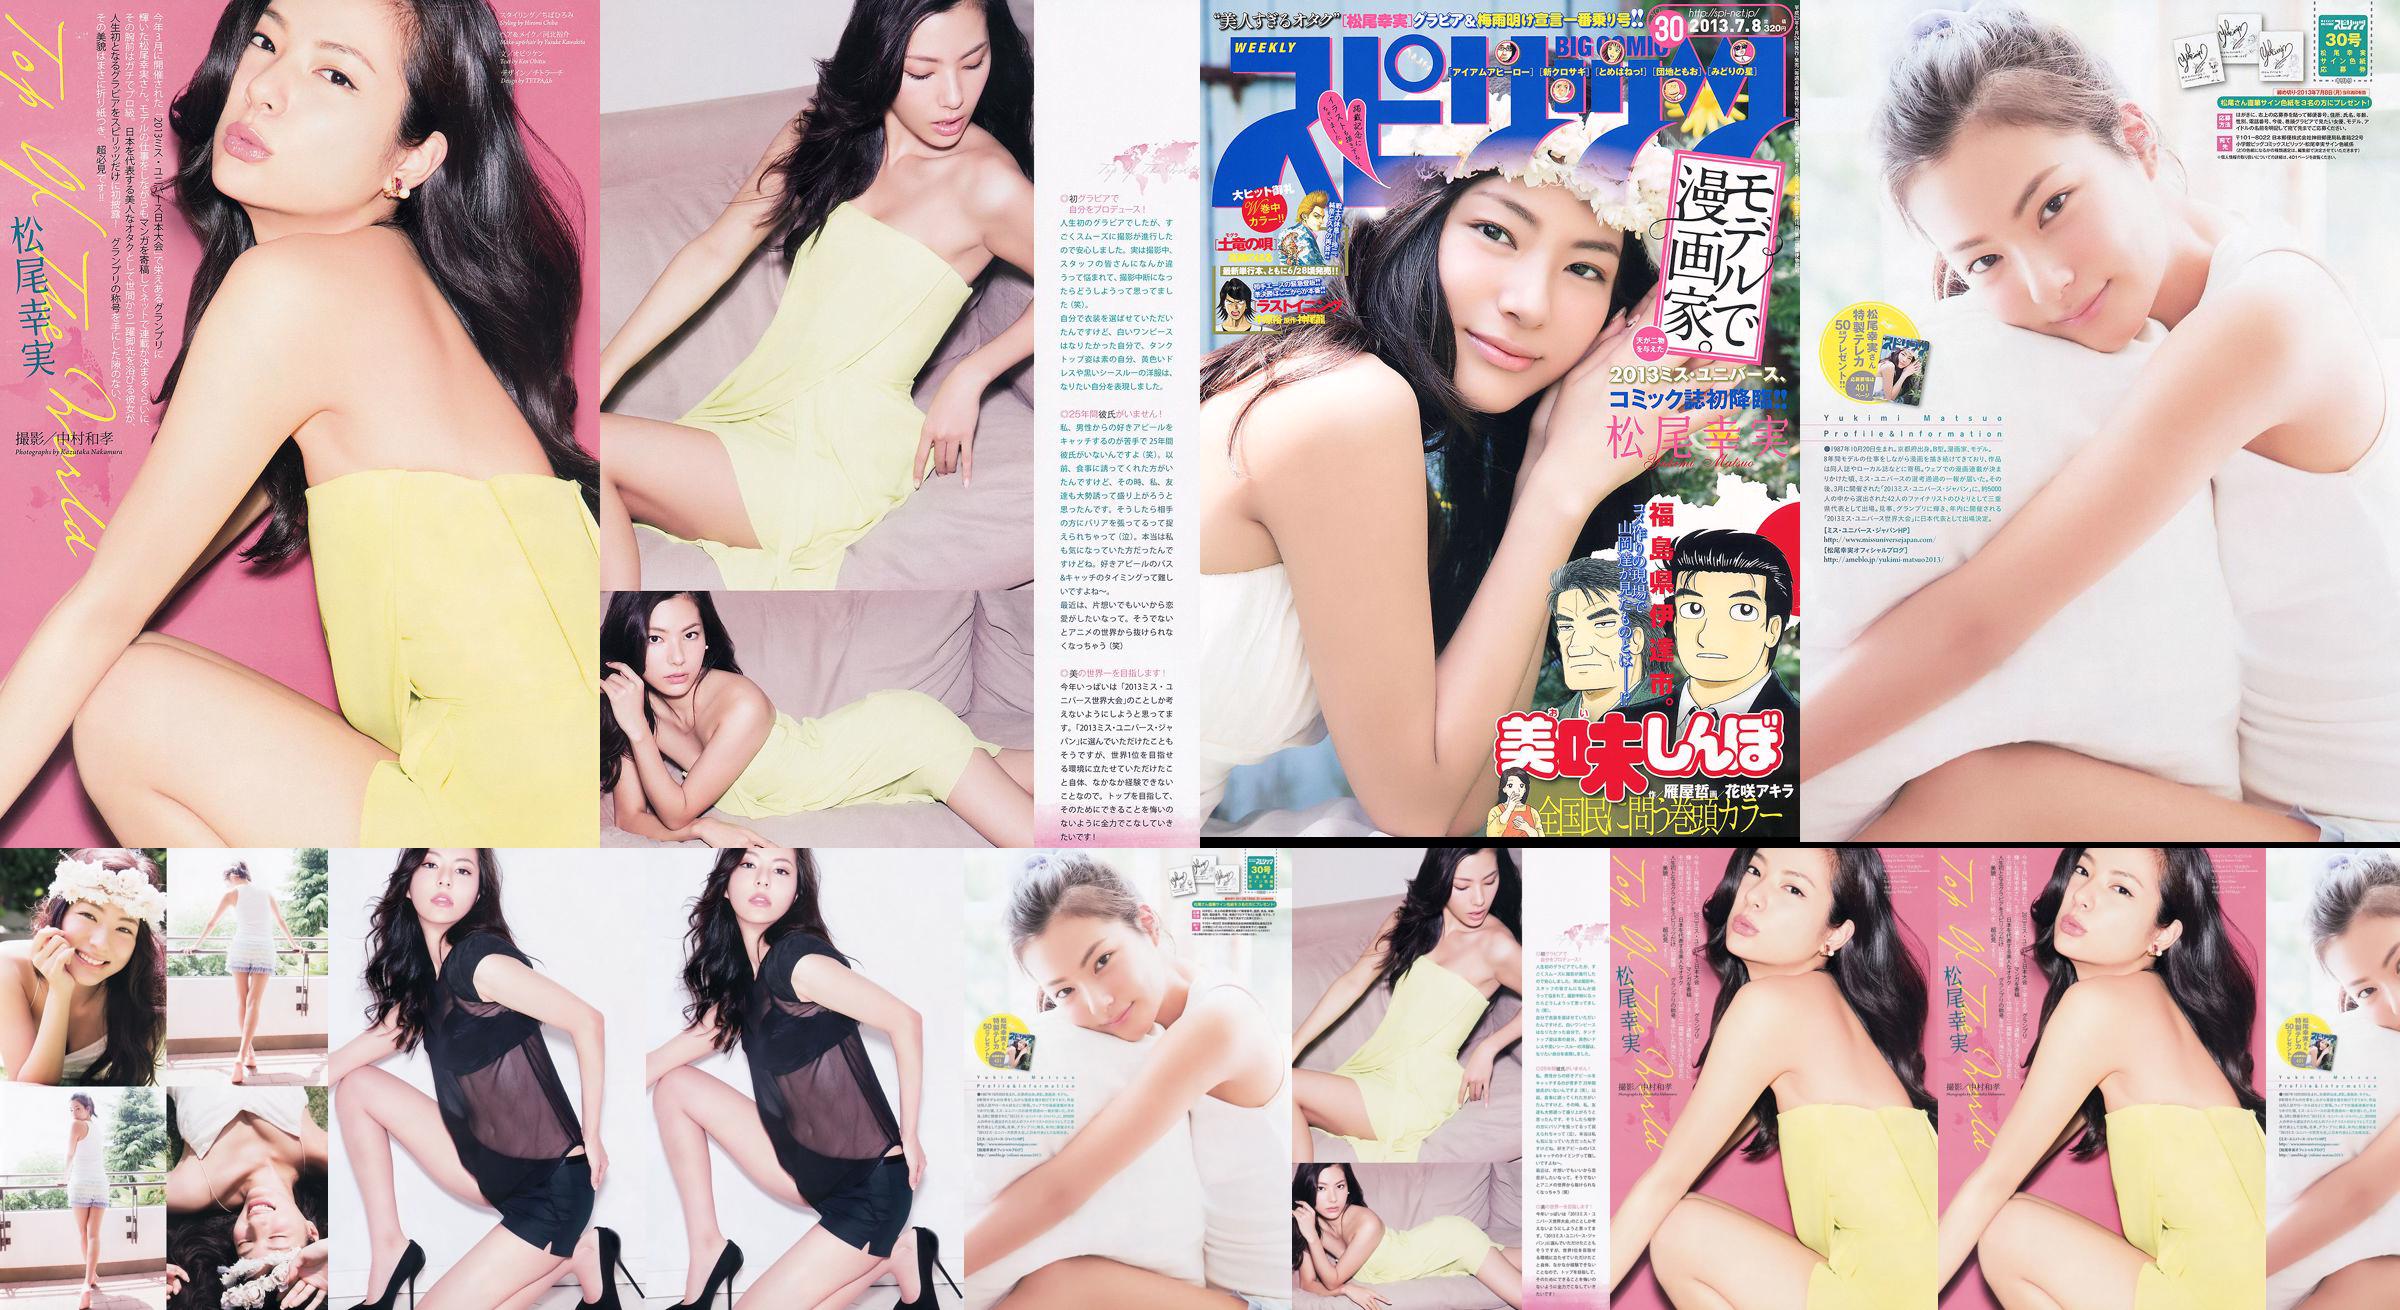 [Weekly Big Comic Spirits] Komi Matsuo 2013 No.30 Photo Magazine No.e1ad7c Trang 1